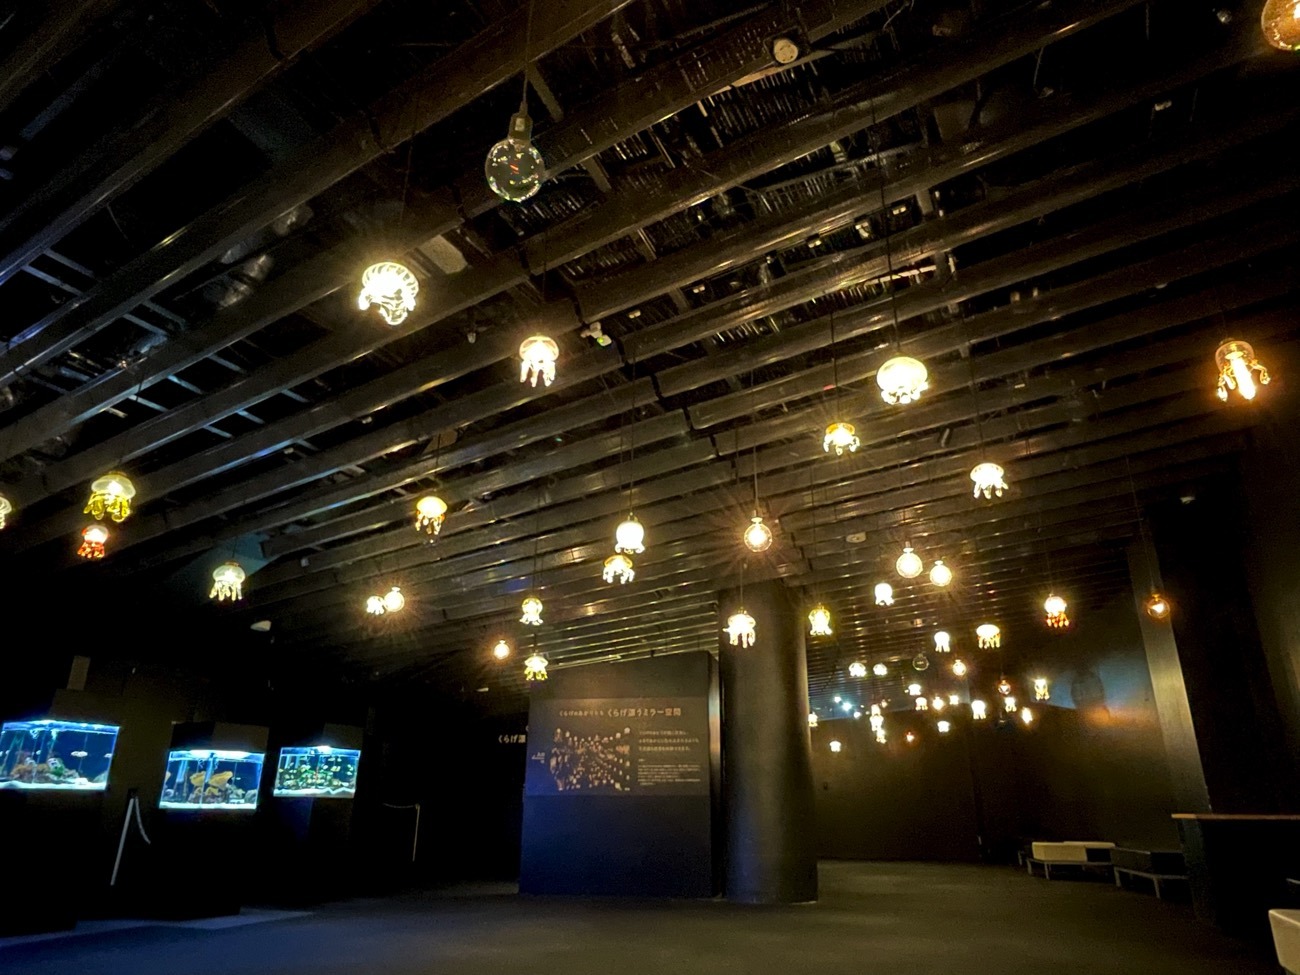 交流プラザの天井に約60個のクラゲランプが装飾されている